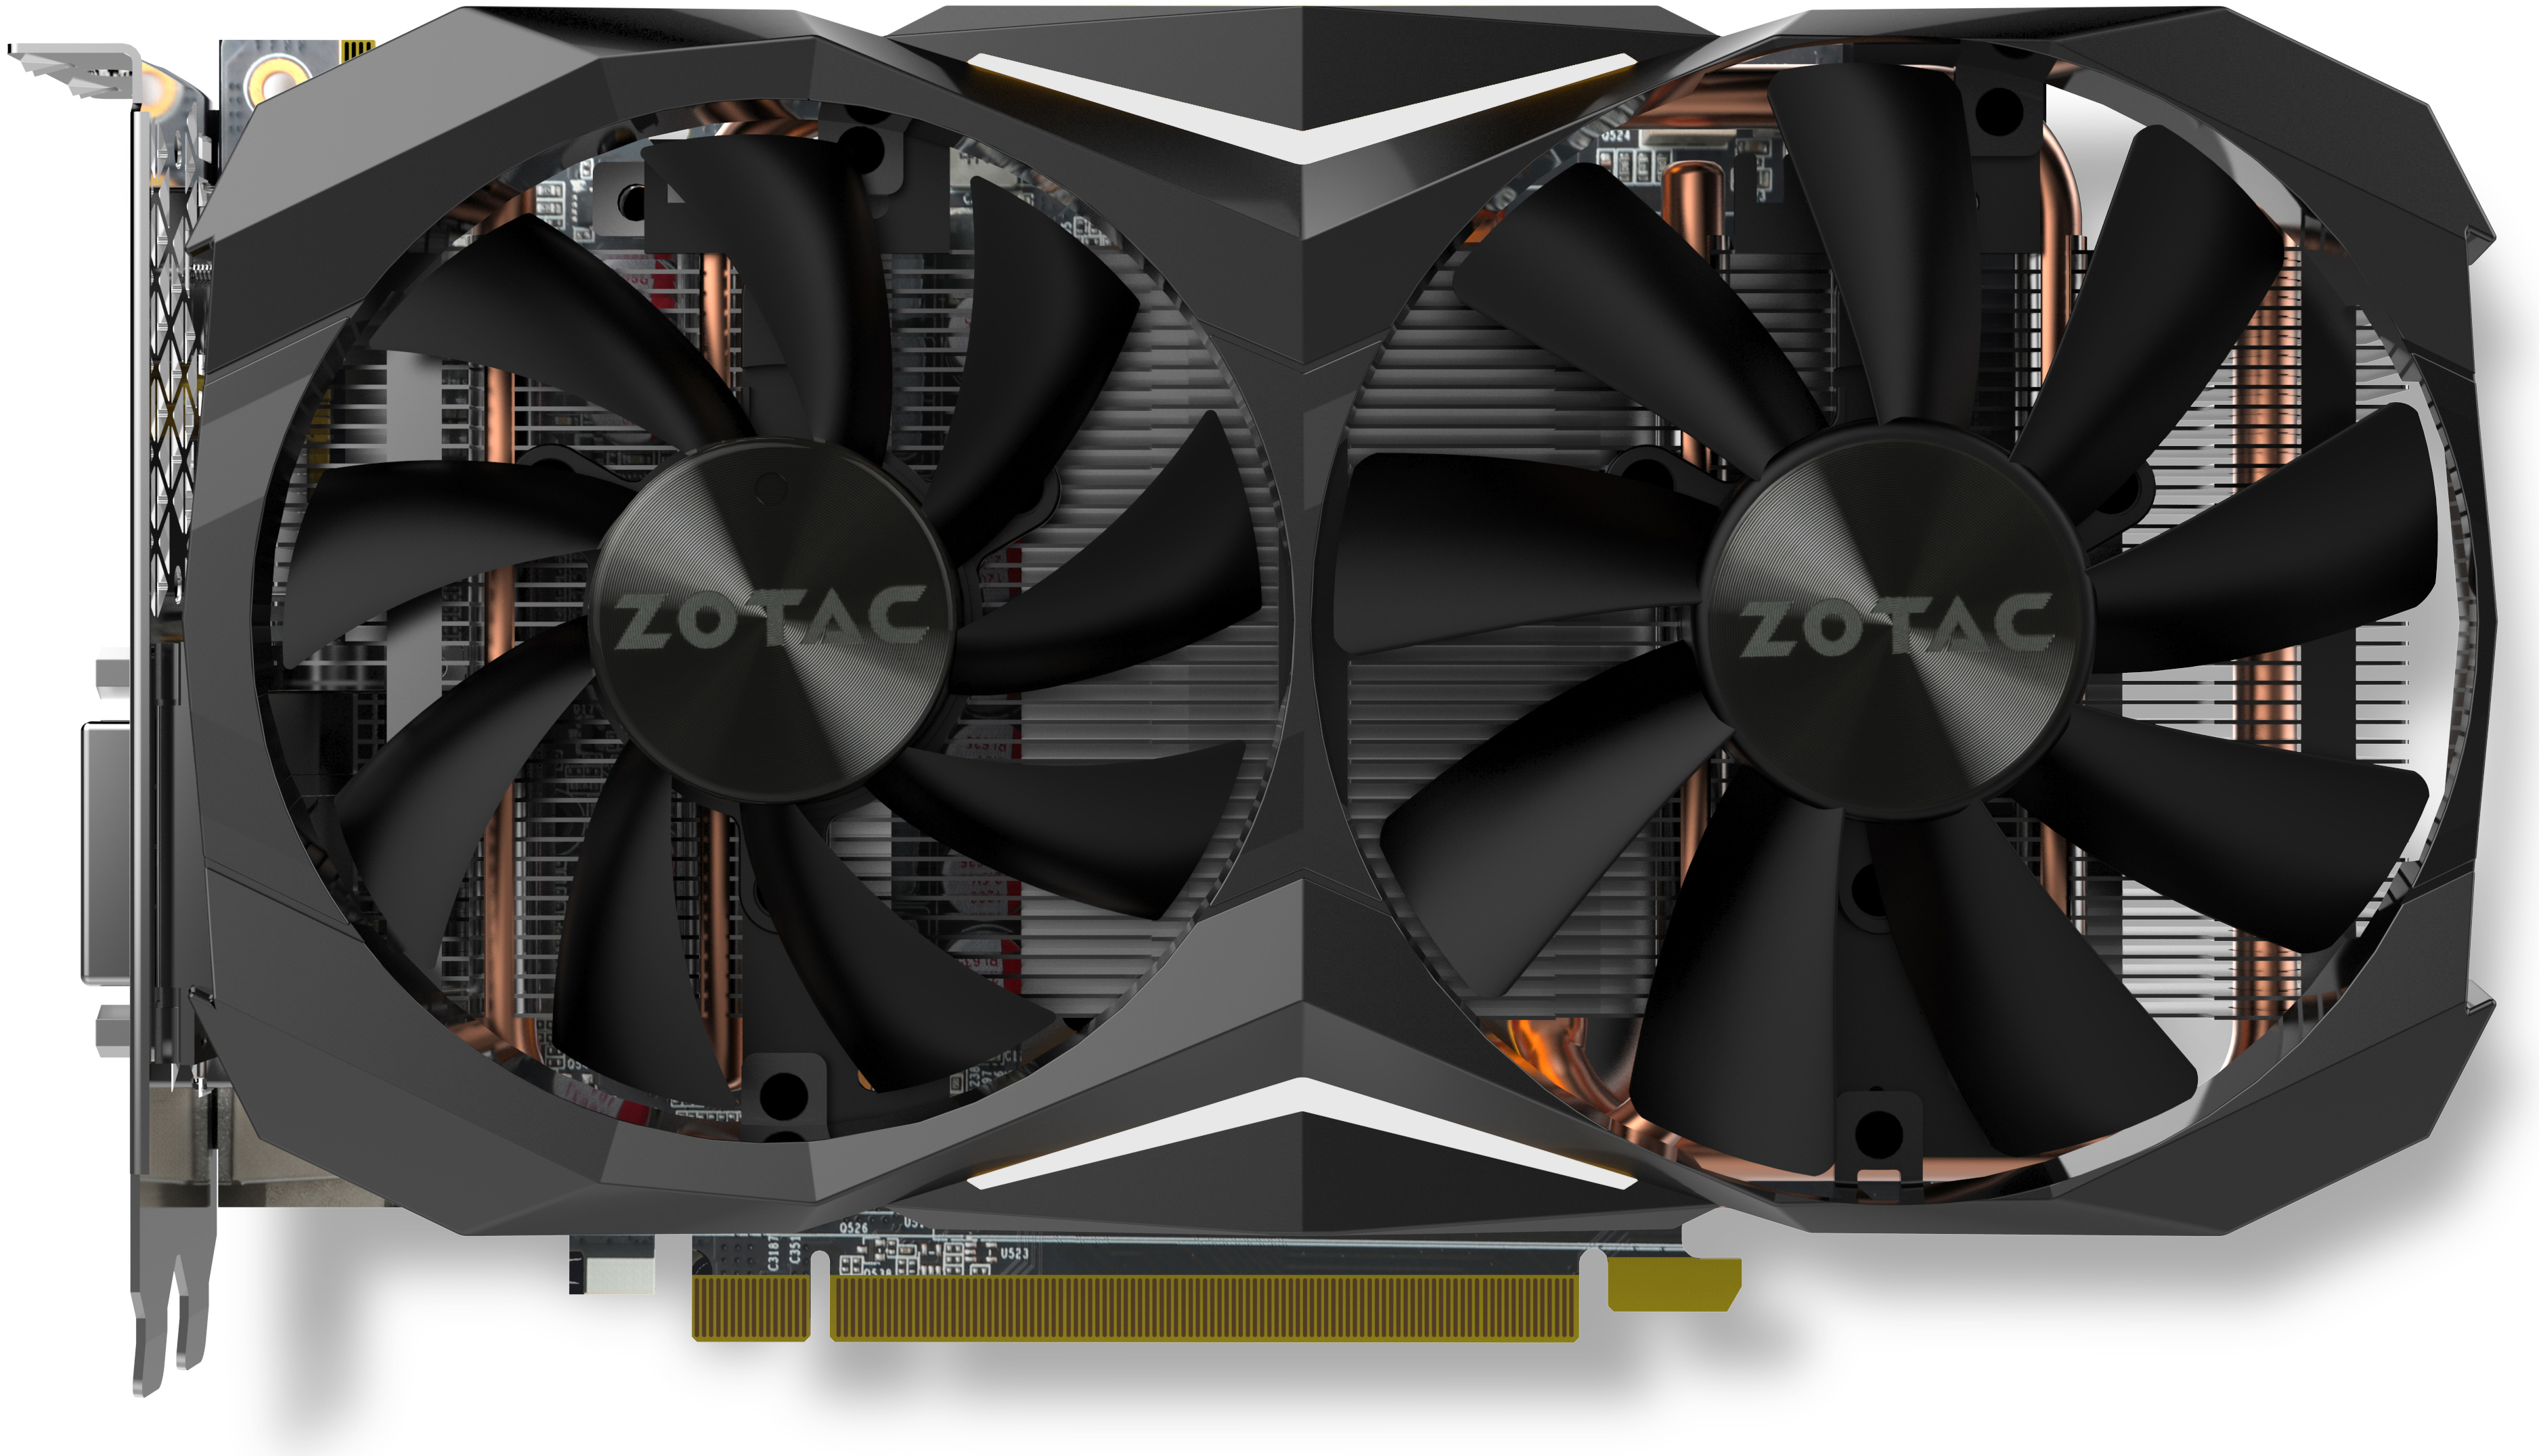 ZOTAC Announces GeForce GTX 1080 for Mini-ITX PCs